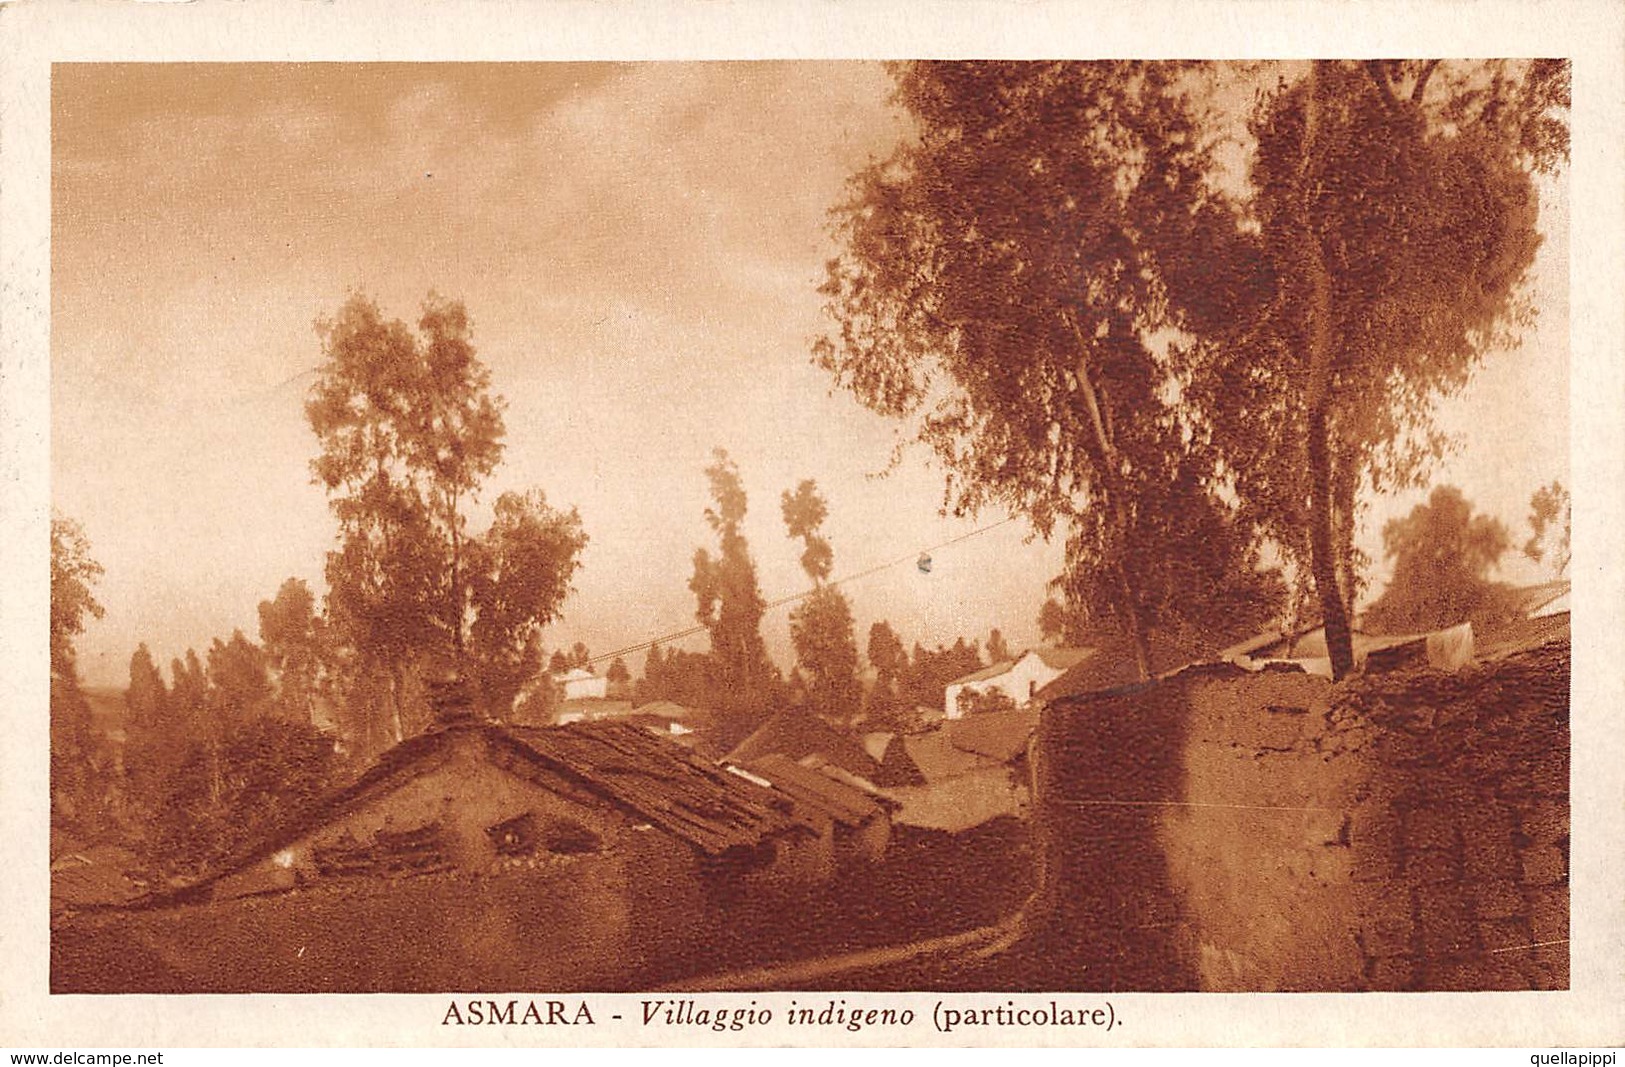 08759 "ERITREA - ASMARA - VILLAGGIO INDIGENO - PARTICOLARE"  FRANCOBOLLO 20 CENT ERITREA. CART  SPED 1938 - Eritrea